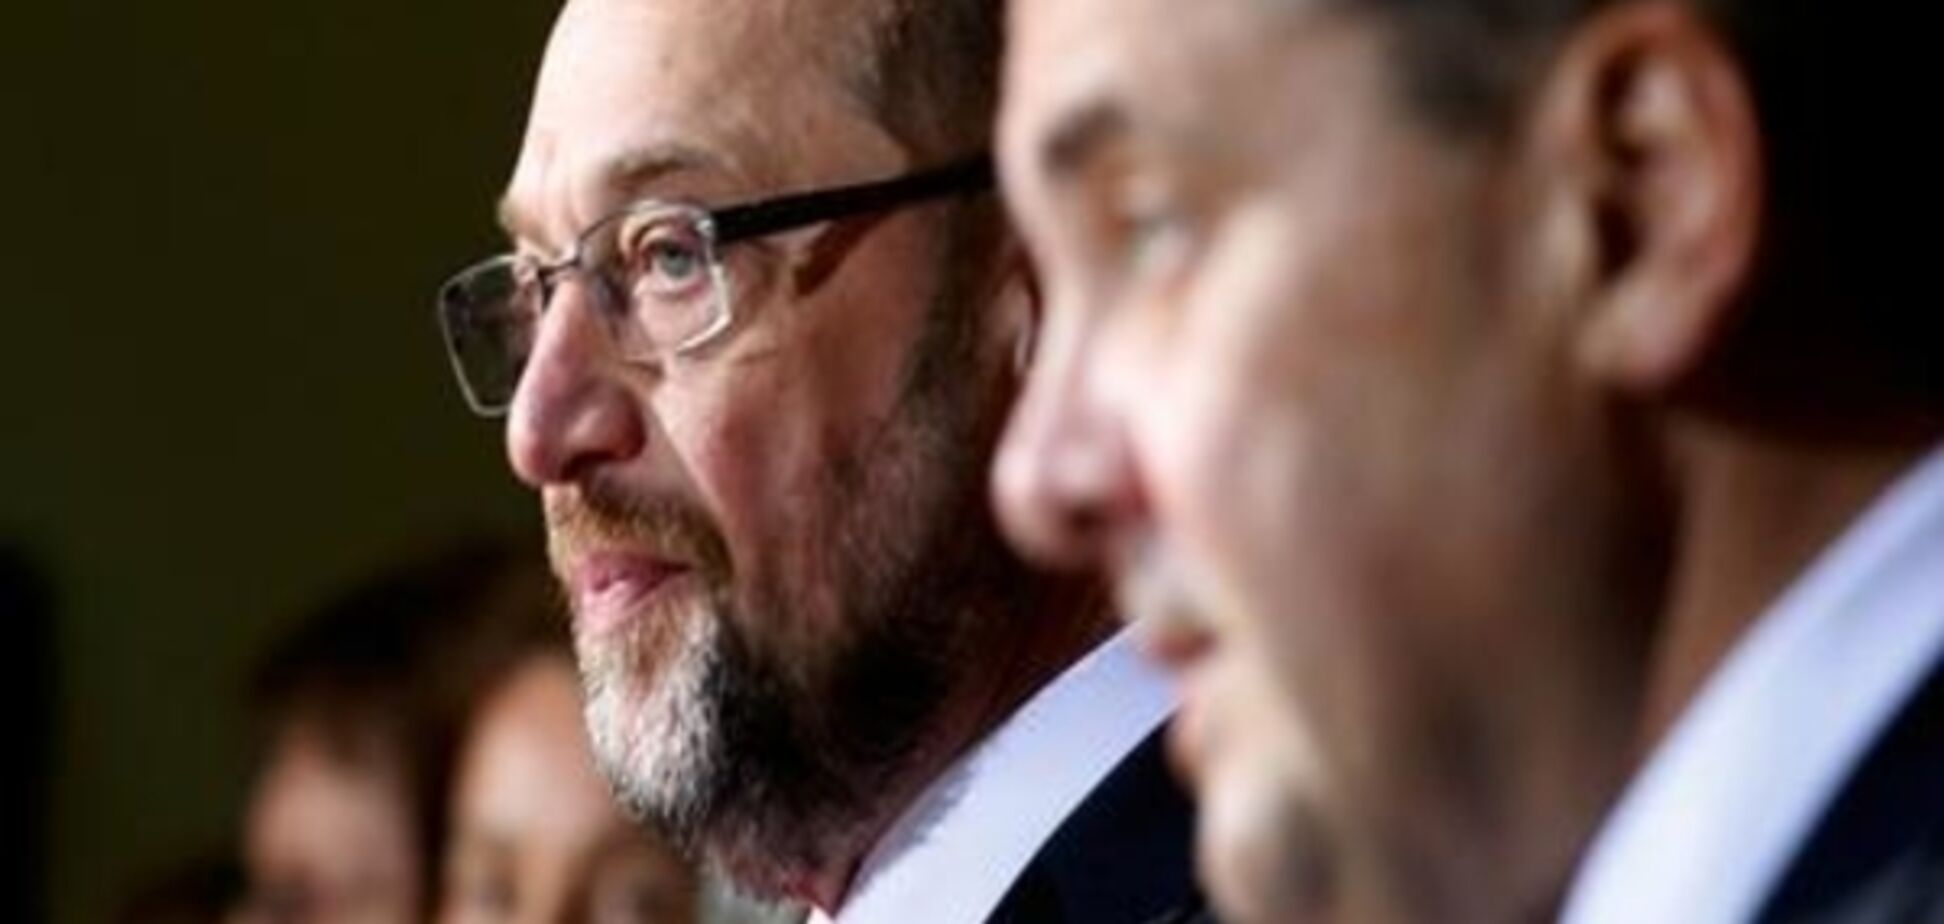 Коментар: СДПН як шанс на справжню альтернативу для Німеччини